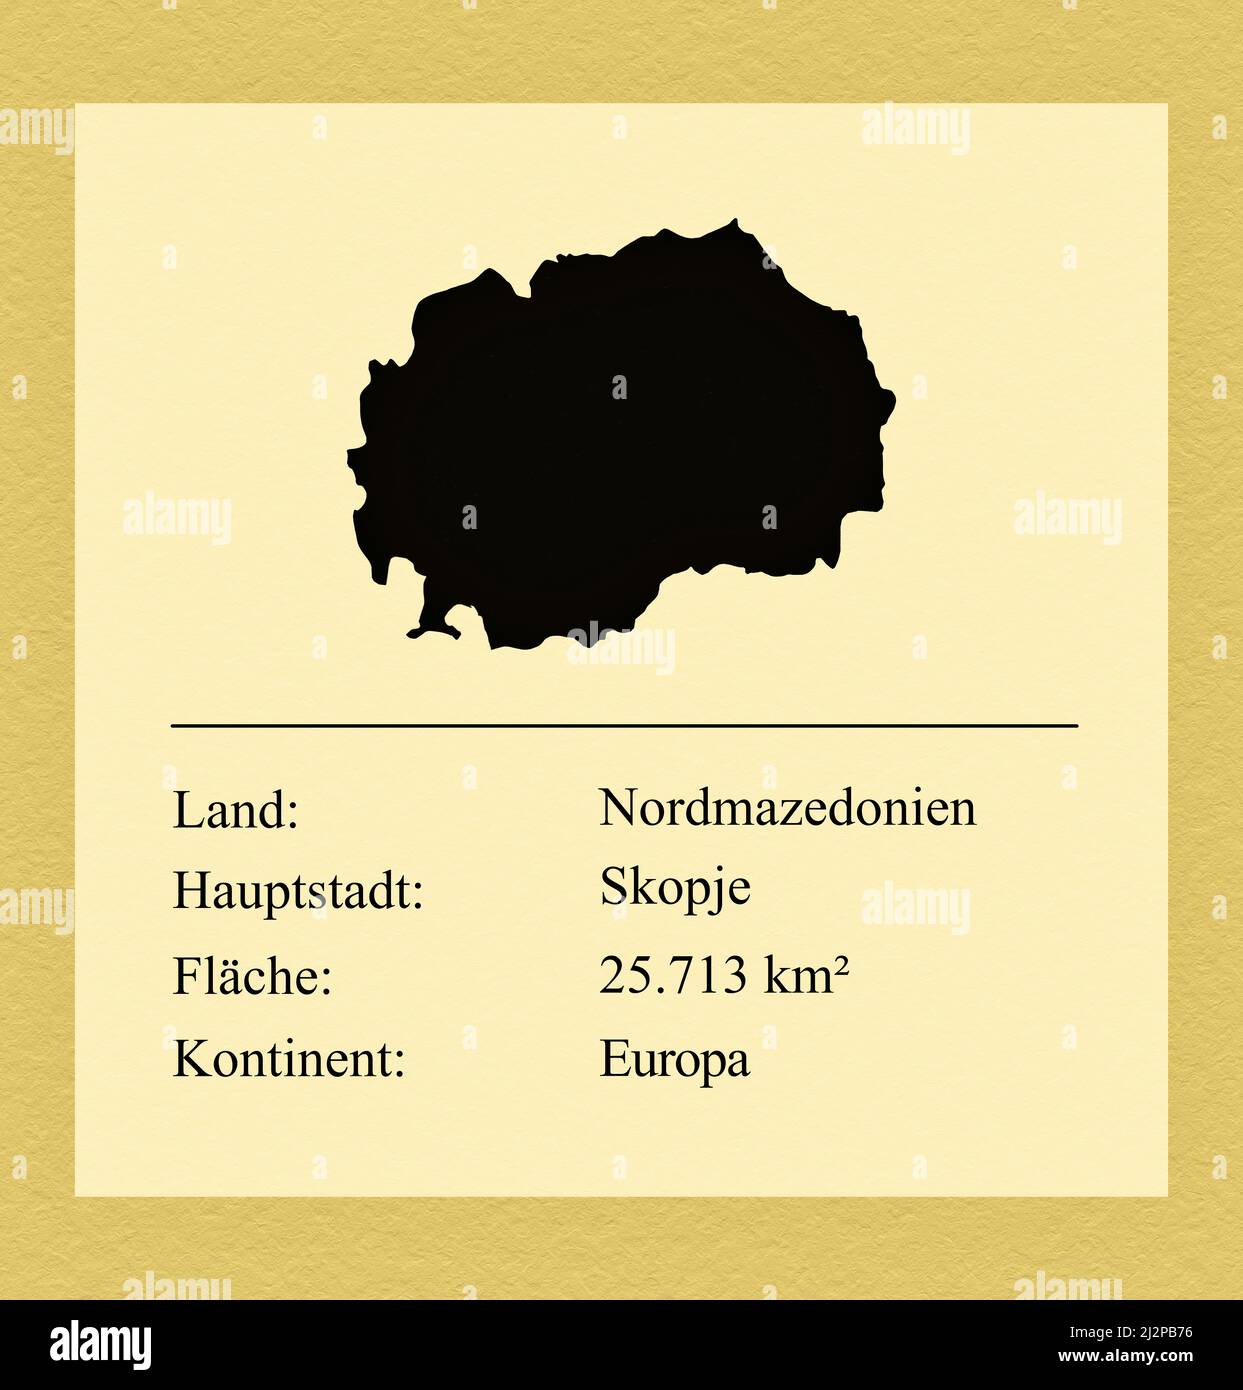 Umrisse des Landes Nordmazedonien, darunter ein kleiner Steckbrief mit Ländernamen, Hauptstadt, Fläche und Kontinent Stock Photo